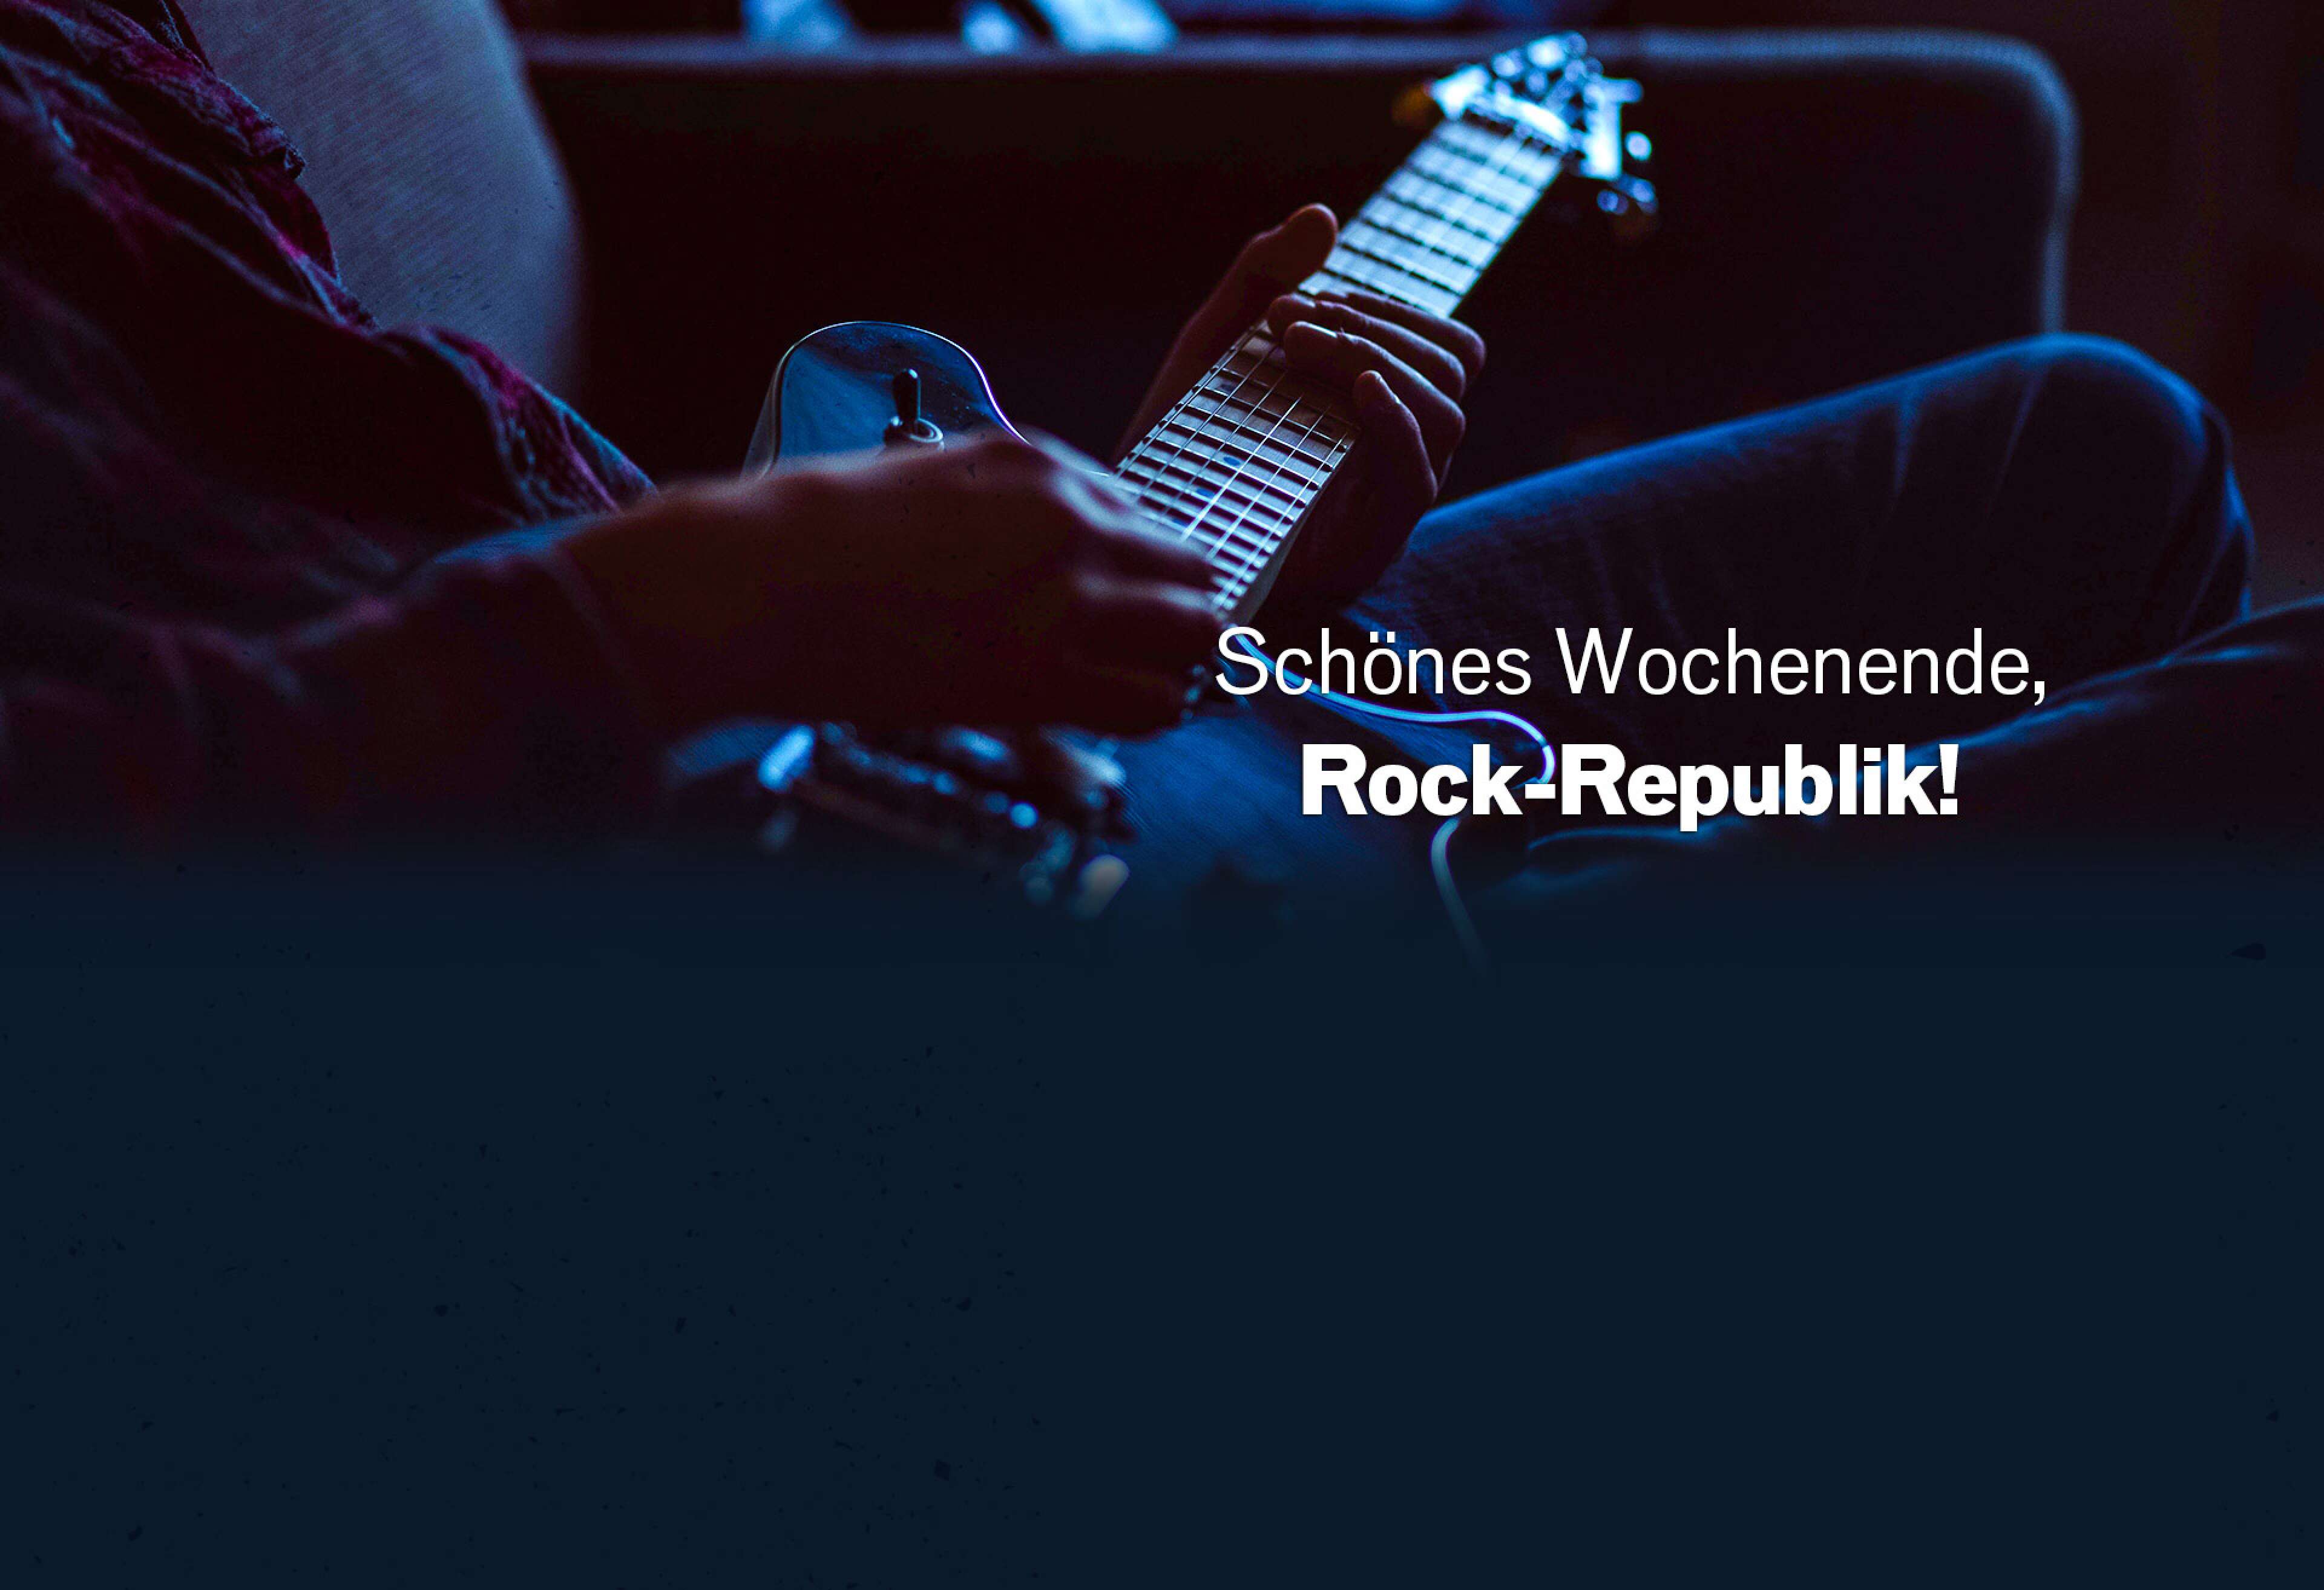 Eine Person liegt auf einer Couch und spielt eine schwarze E-Gitarre. Darauf steht ein Text: "Schönes Wochenende, Rock-Republik!"